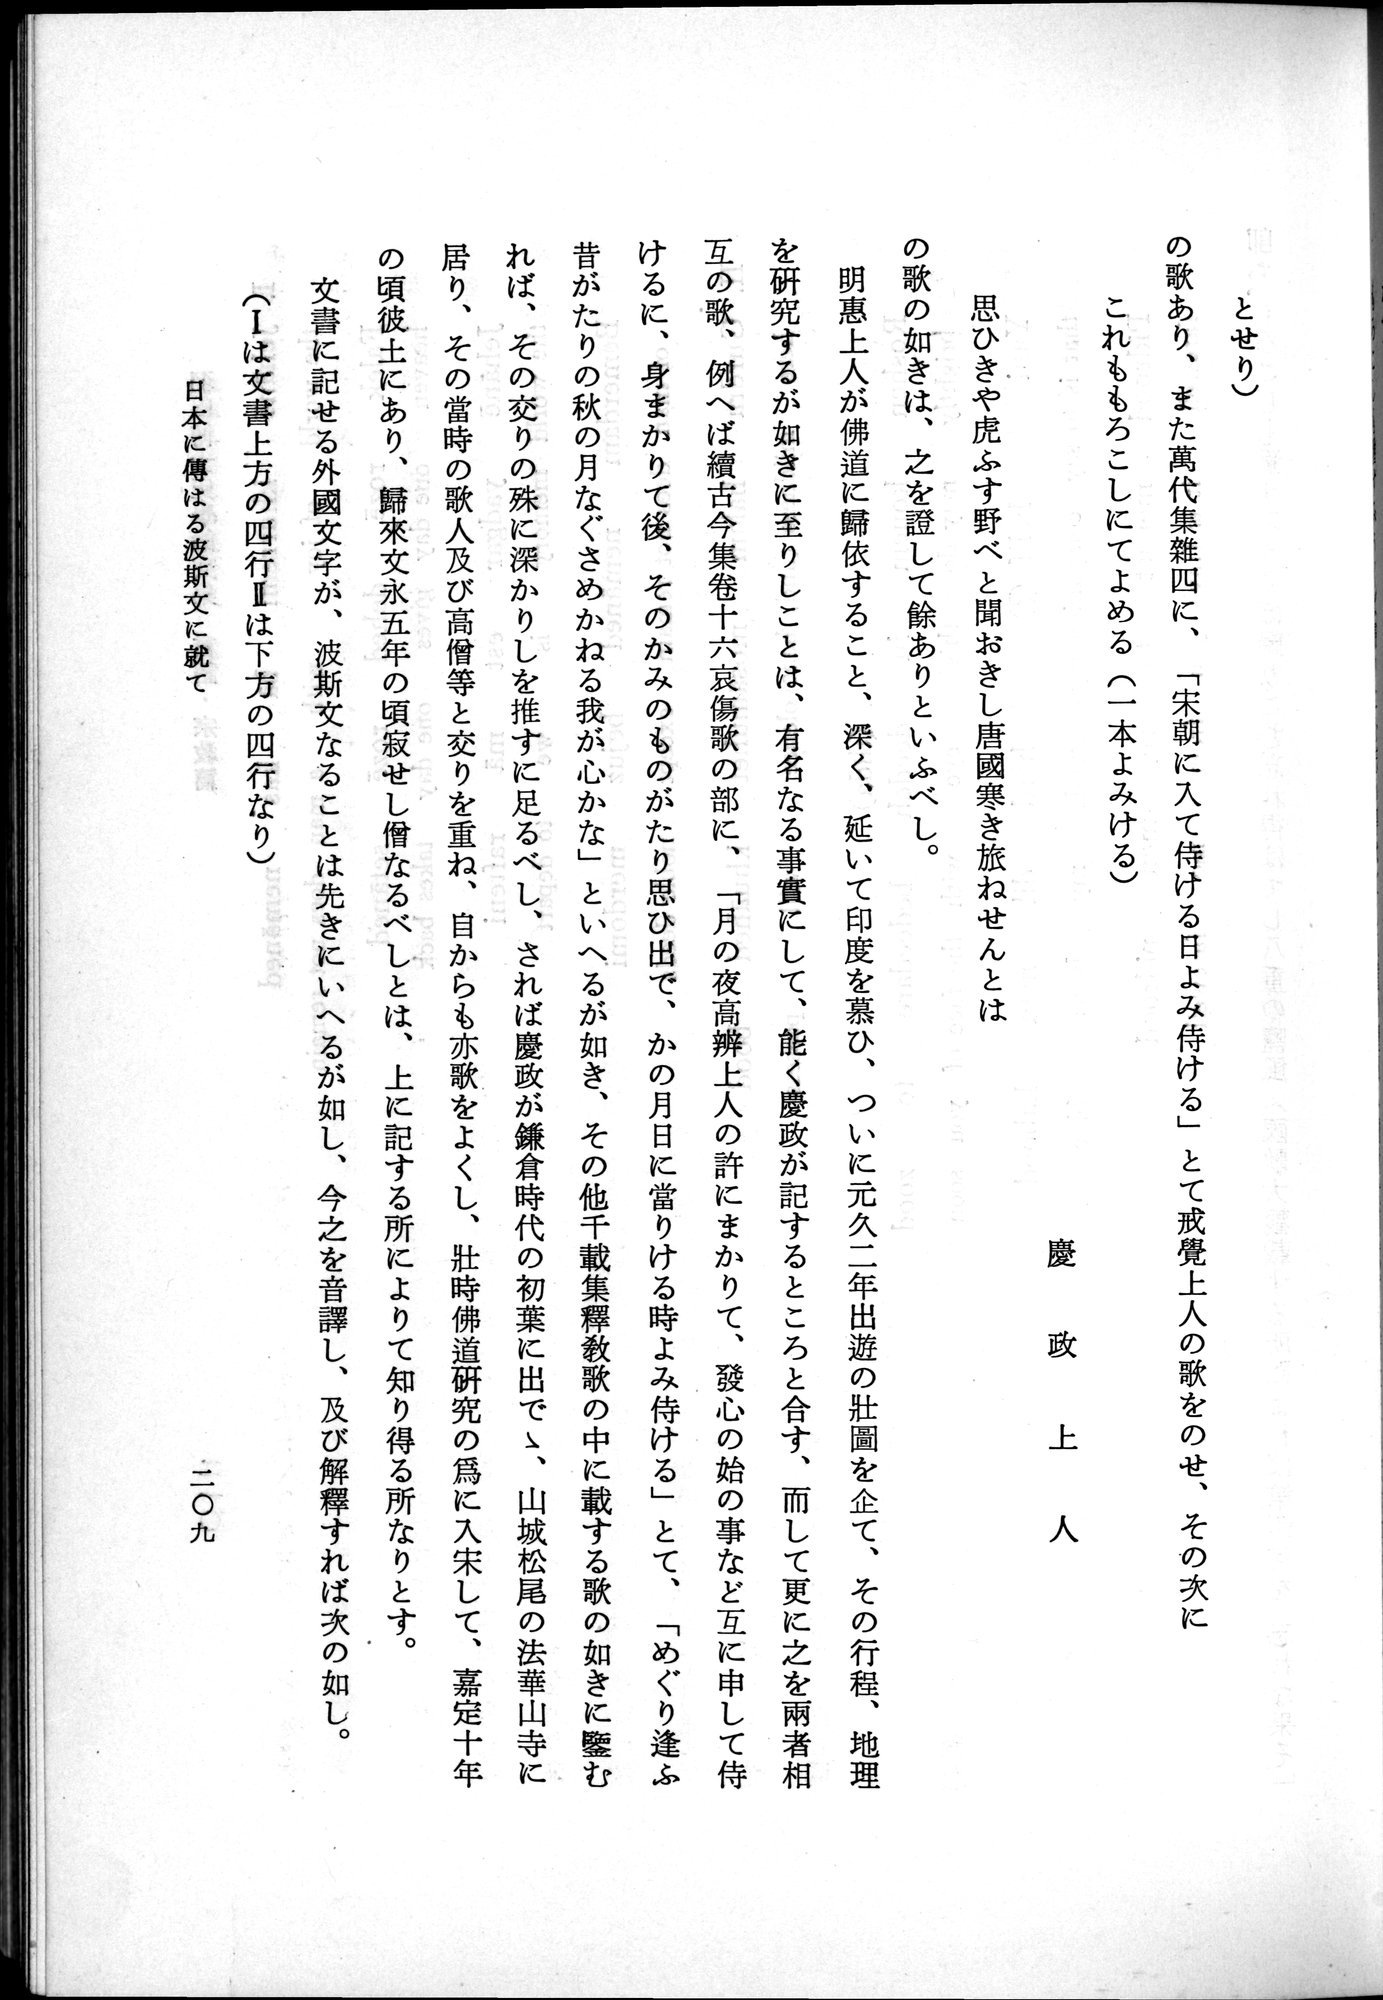 羽田博士史学論文集 : vol.2 / Page 271 (Grayscale High Resolution Image)